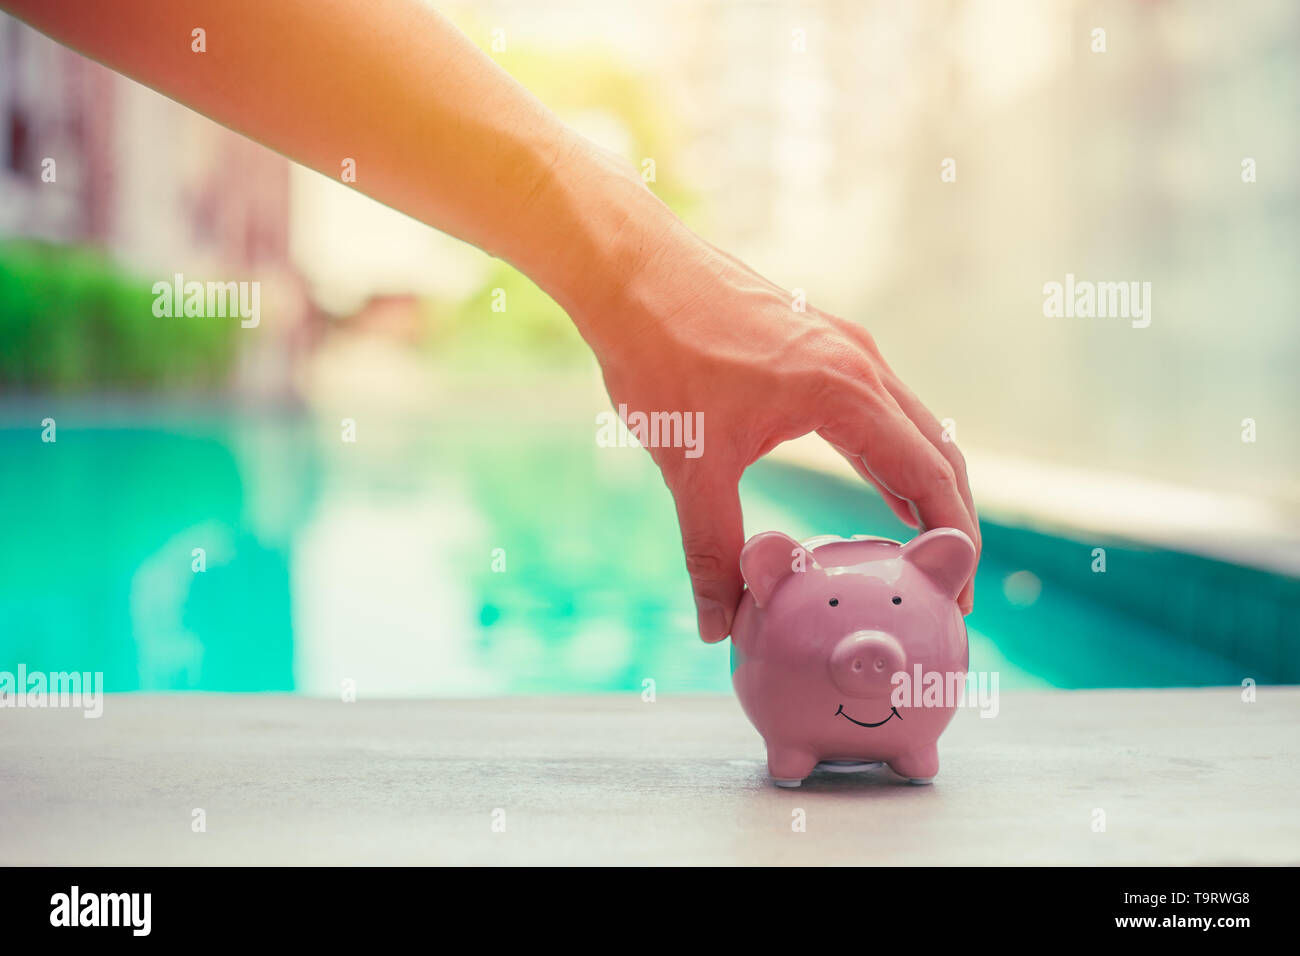 Schwein Bank, Hand, Persönliche Finanzen geld Konzept speichern Stockfoto